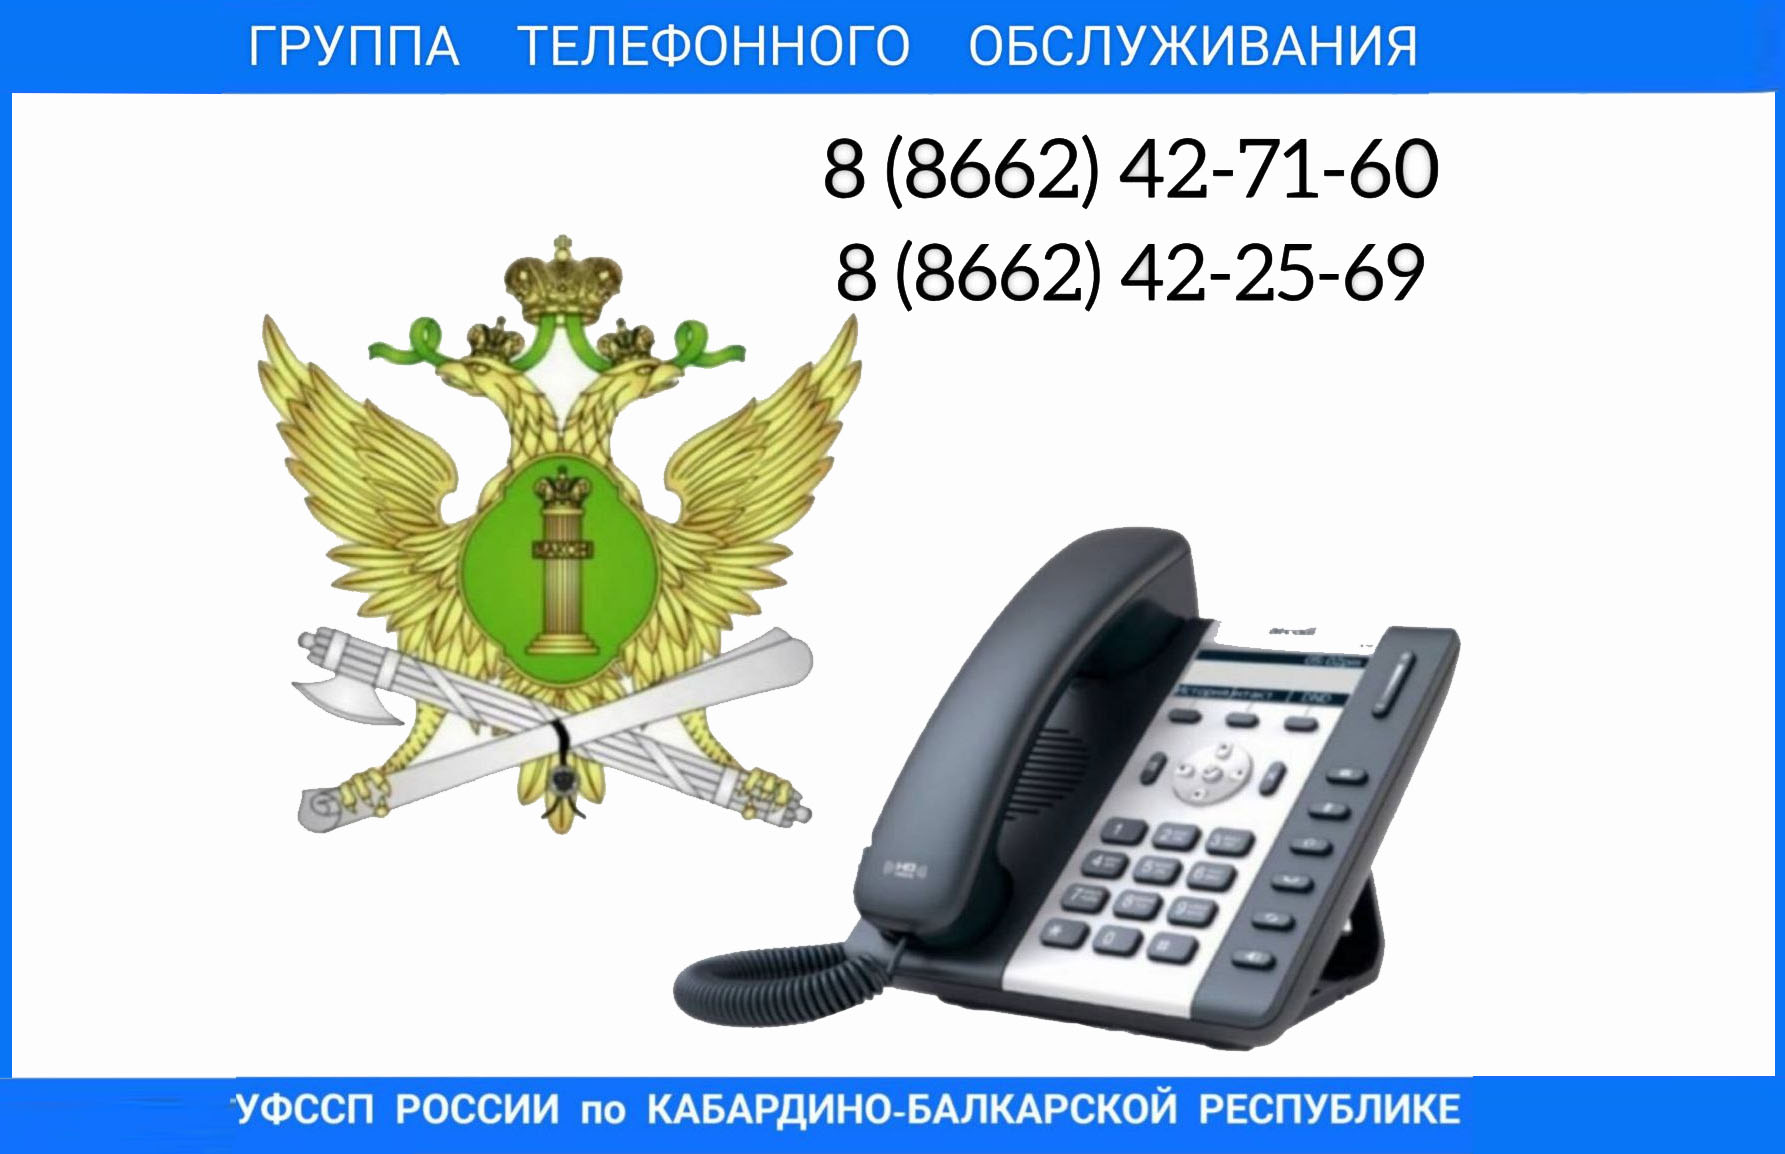 Группа телефонного обслуживания ФССП. Формат телефонного номера РФ. Судебные приставы КБР.